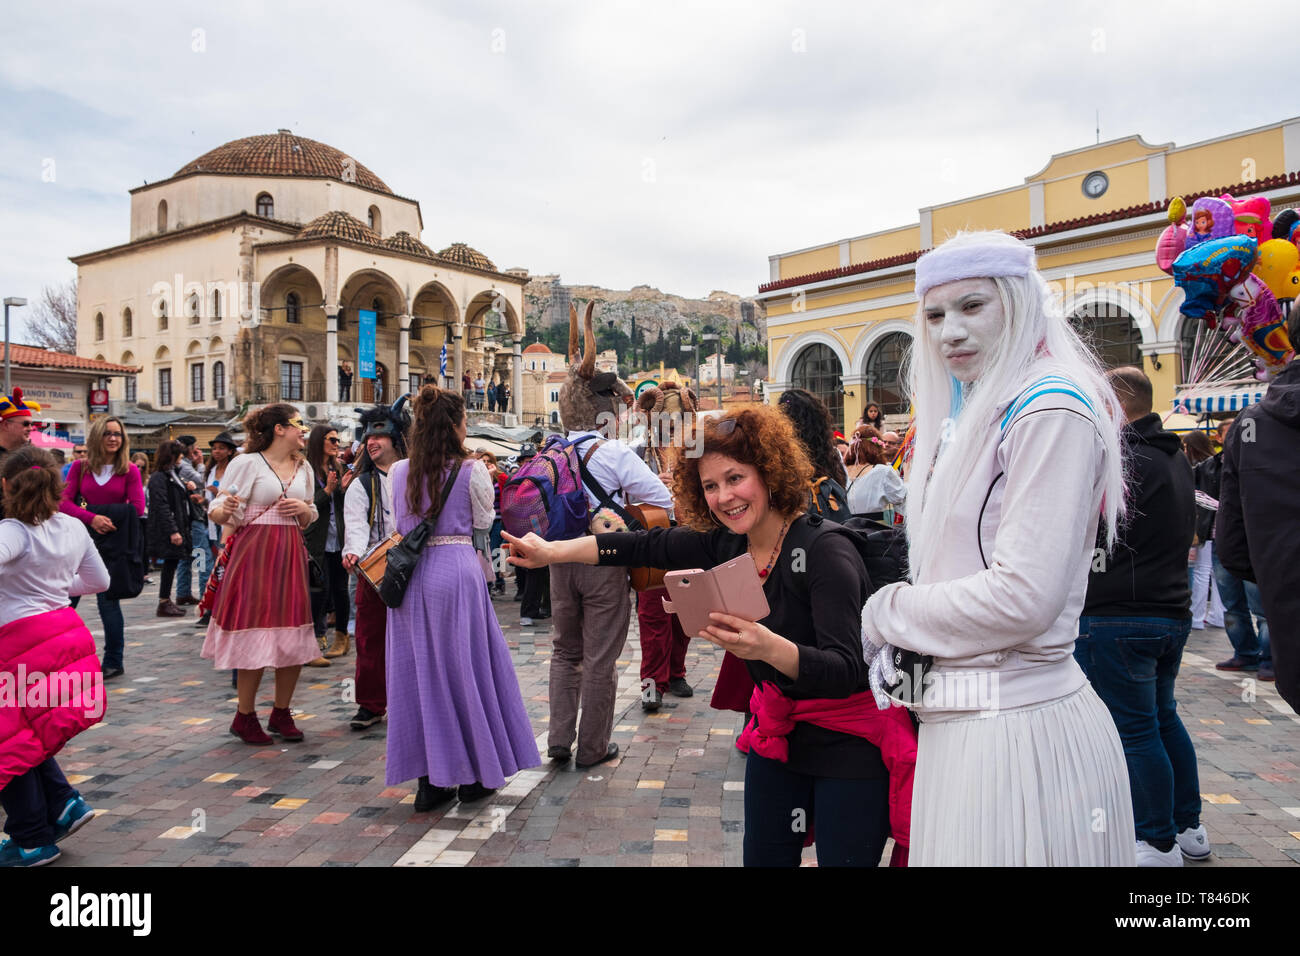 Athens, Greece - March 9, 2019: Greeks celebrating carnival at Monastiraki square in Athens Stock Photo